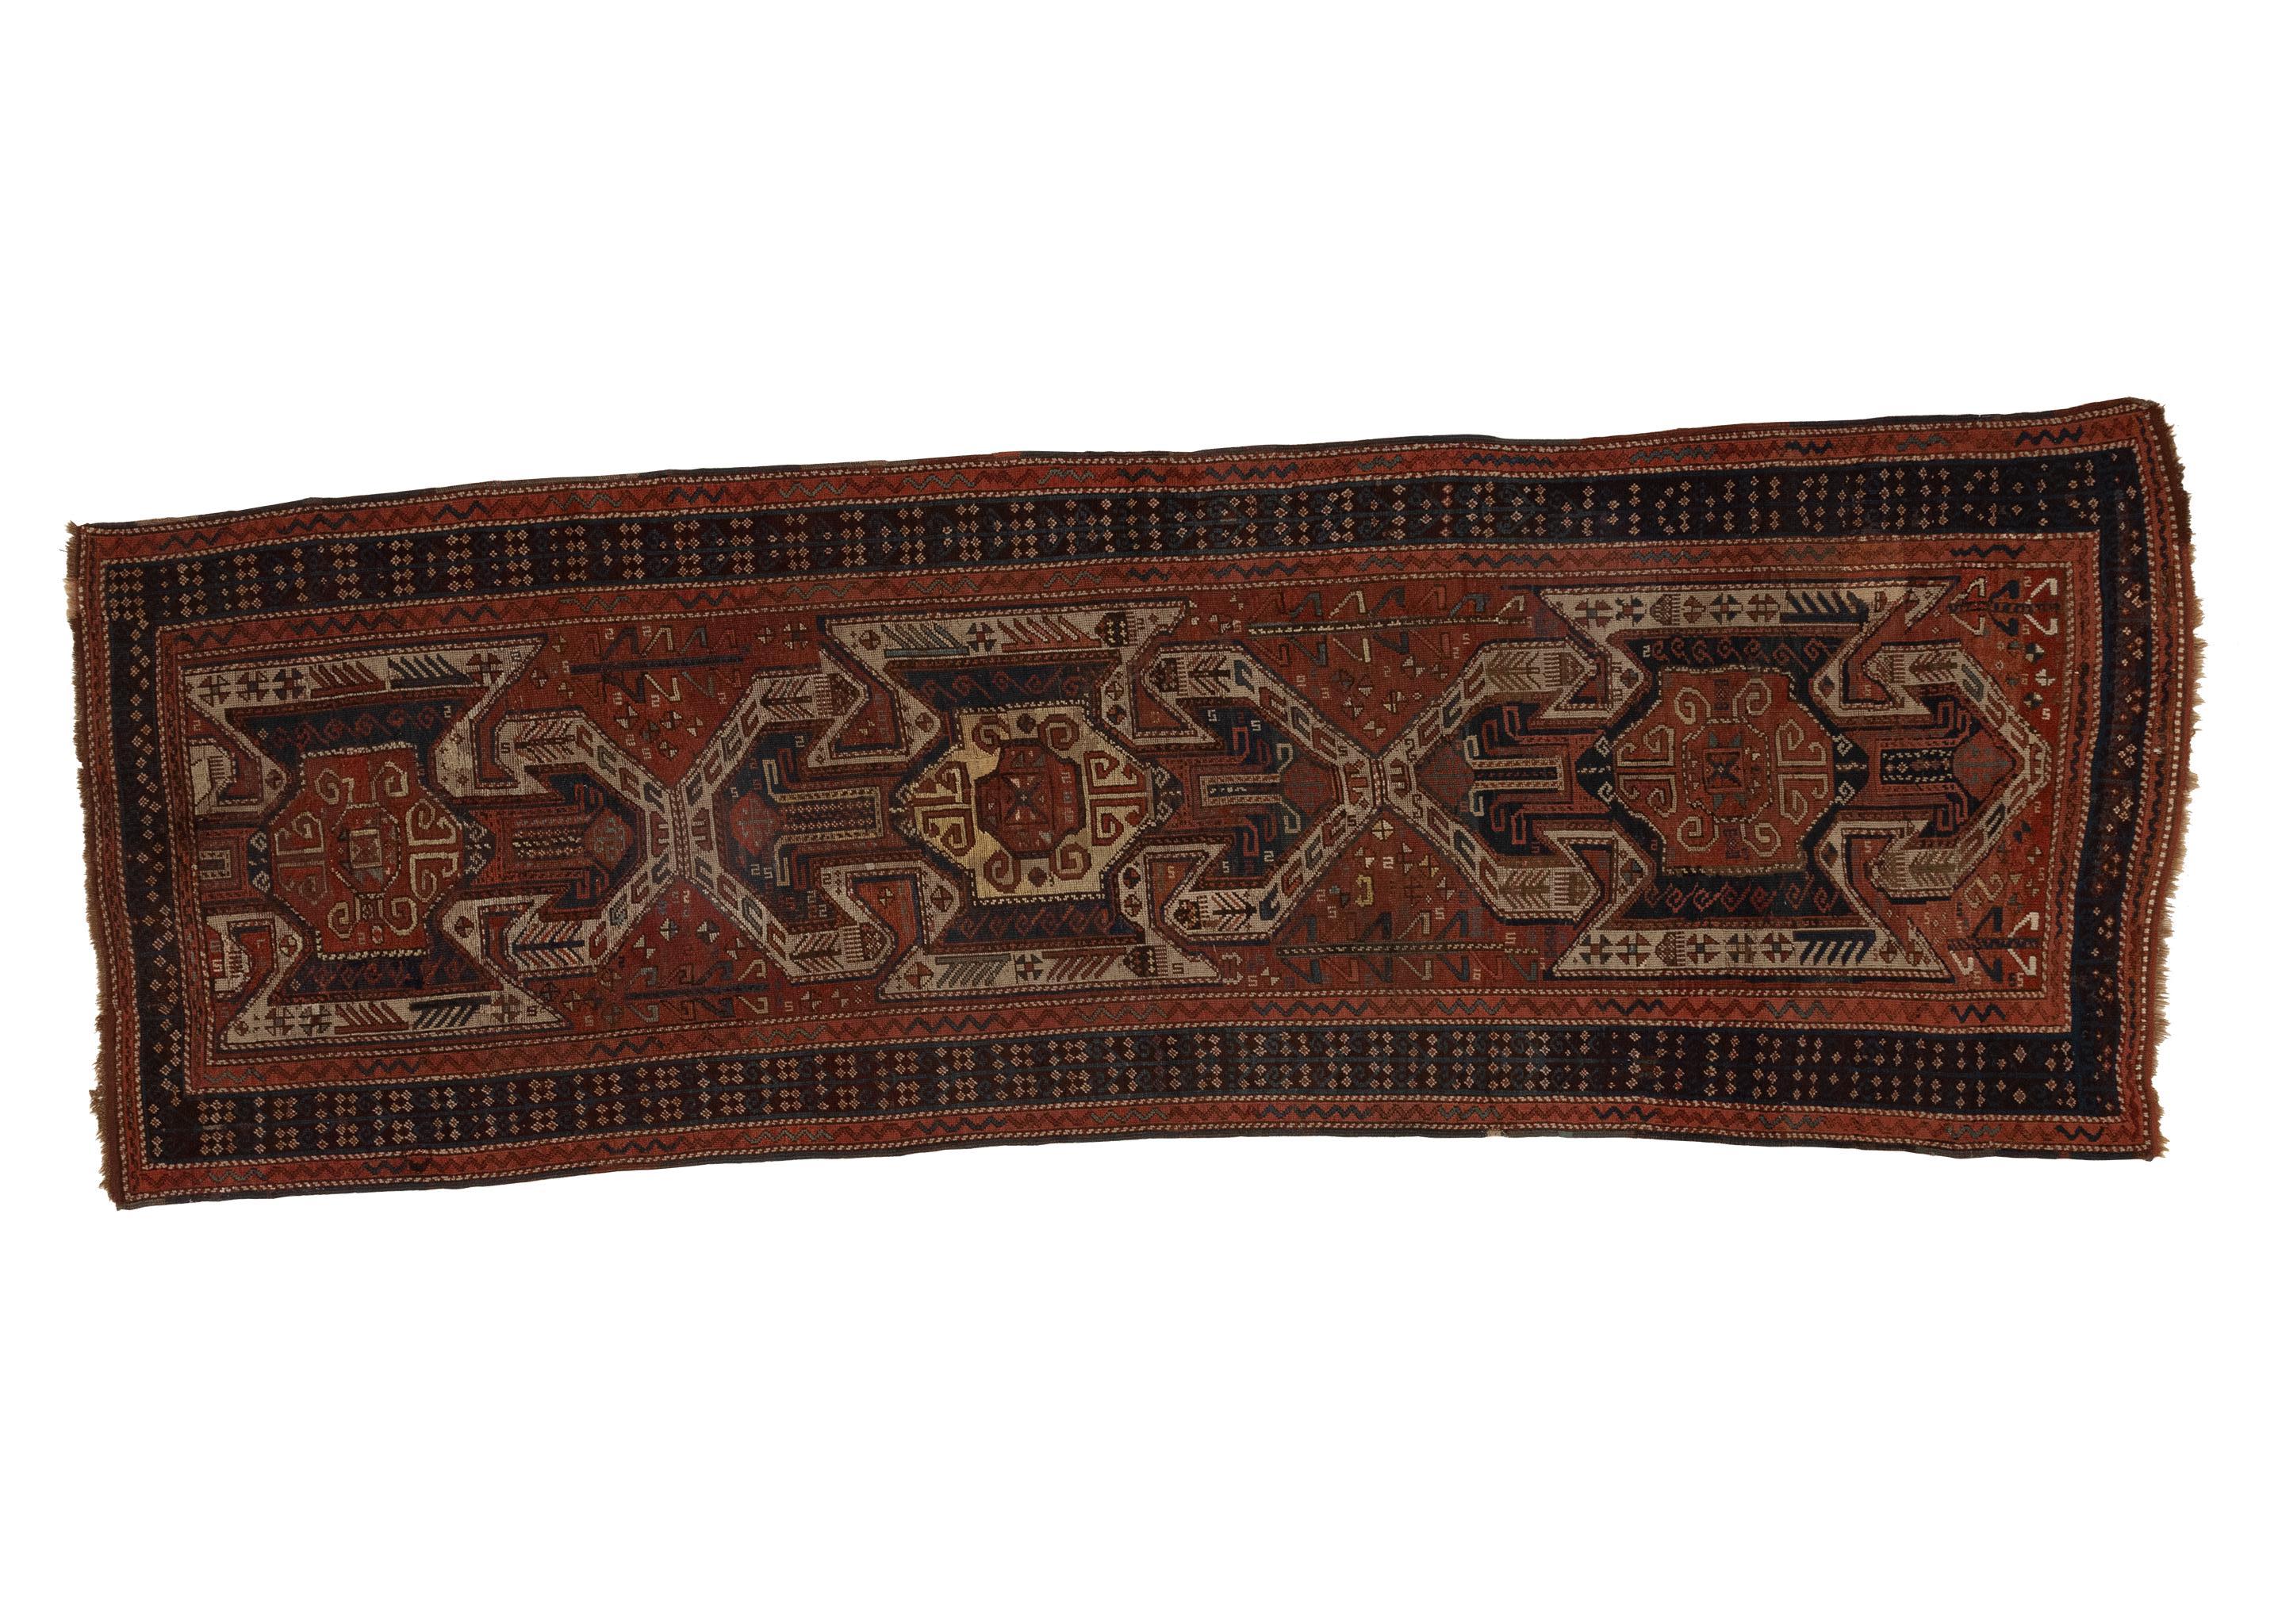 Dieser antike kaukasische Teppich aus den 1880er Jahren besticht durch seine Mischung aus verbrannten Orange- und Schwarztönen, die mit einem traditionellen Muster verziert sind. Mit einer Größe von 4x12 ist dieser Teppich ein Zeugnis für die